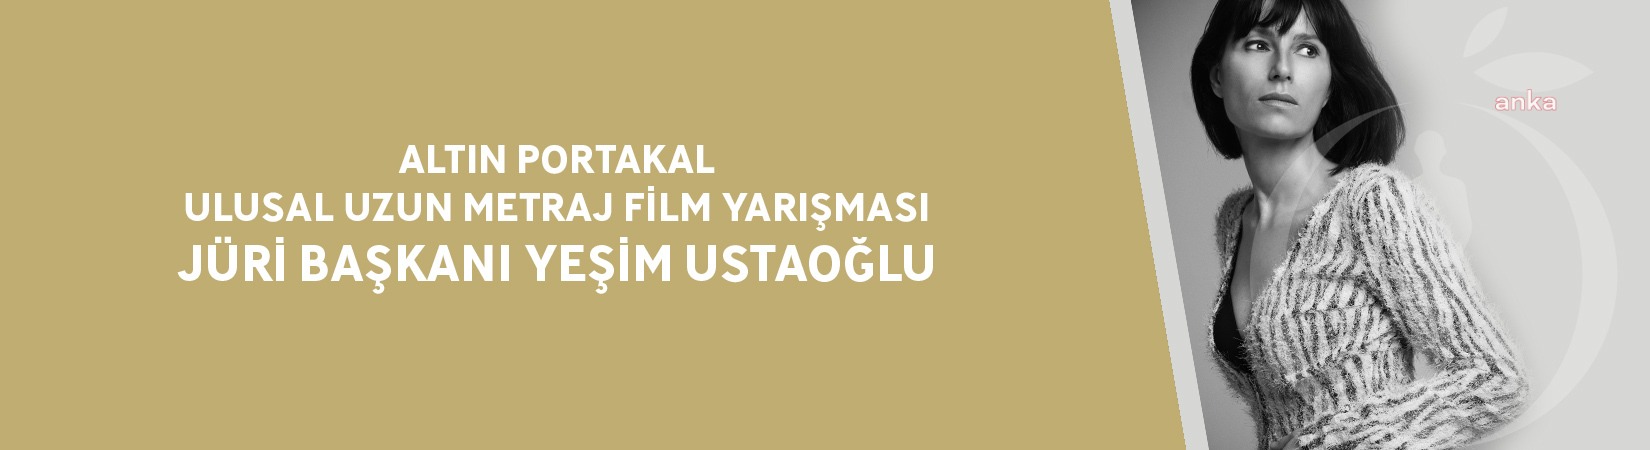 Altın Portakal Ulusal Uzun Metraj Film Yarışması Jüri Başkanı Yeşim Ustaoğlu Oldu